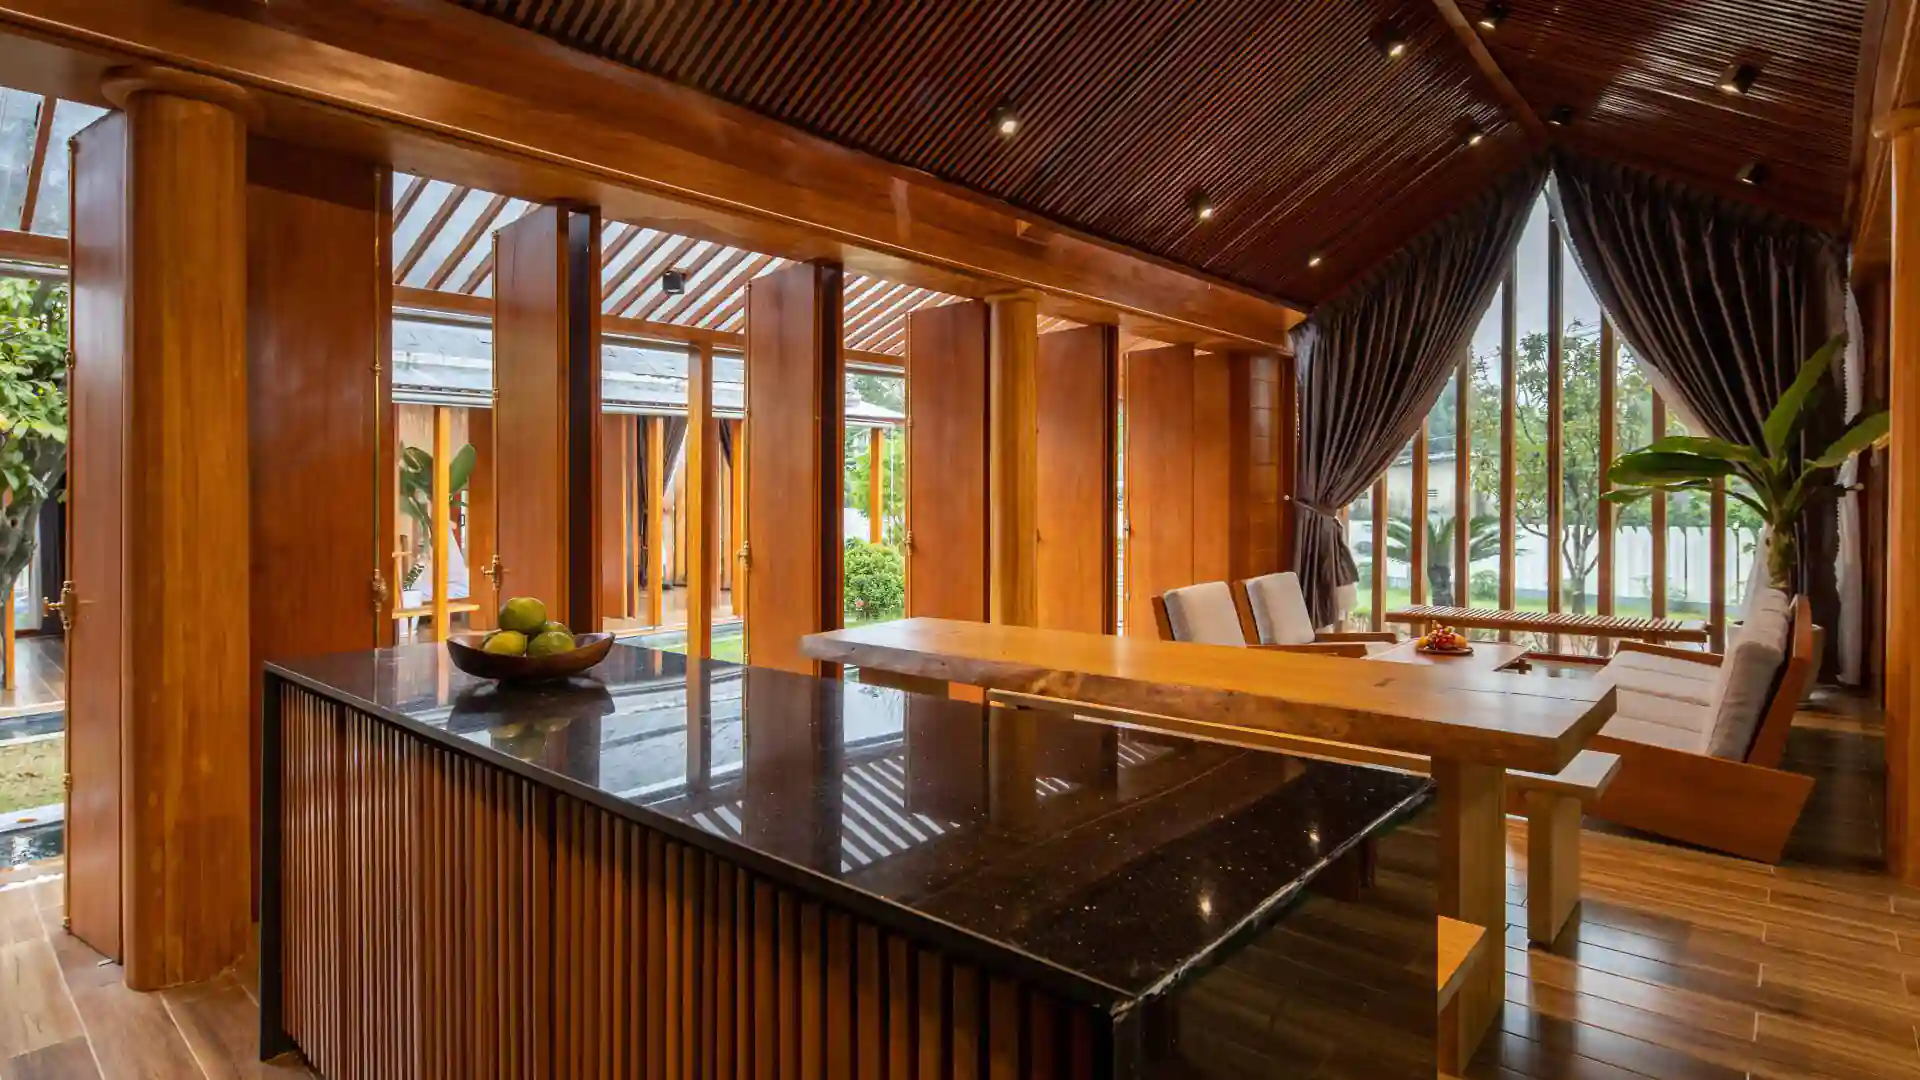 Thiết kế đảo bếp với hình khối vững chắc, ngăn cách khéo léo không gian tiếp khách và khu vực nấu nướng